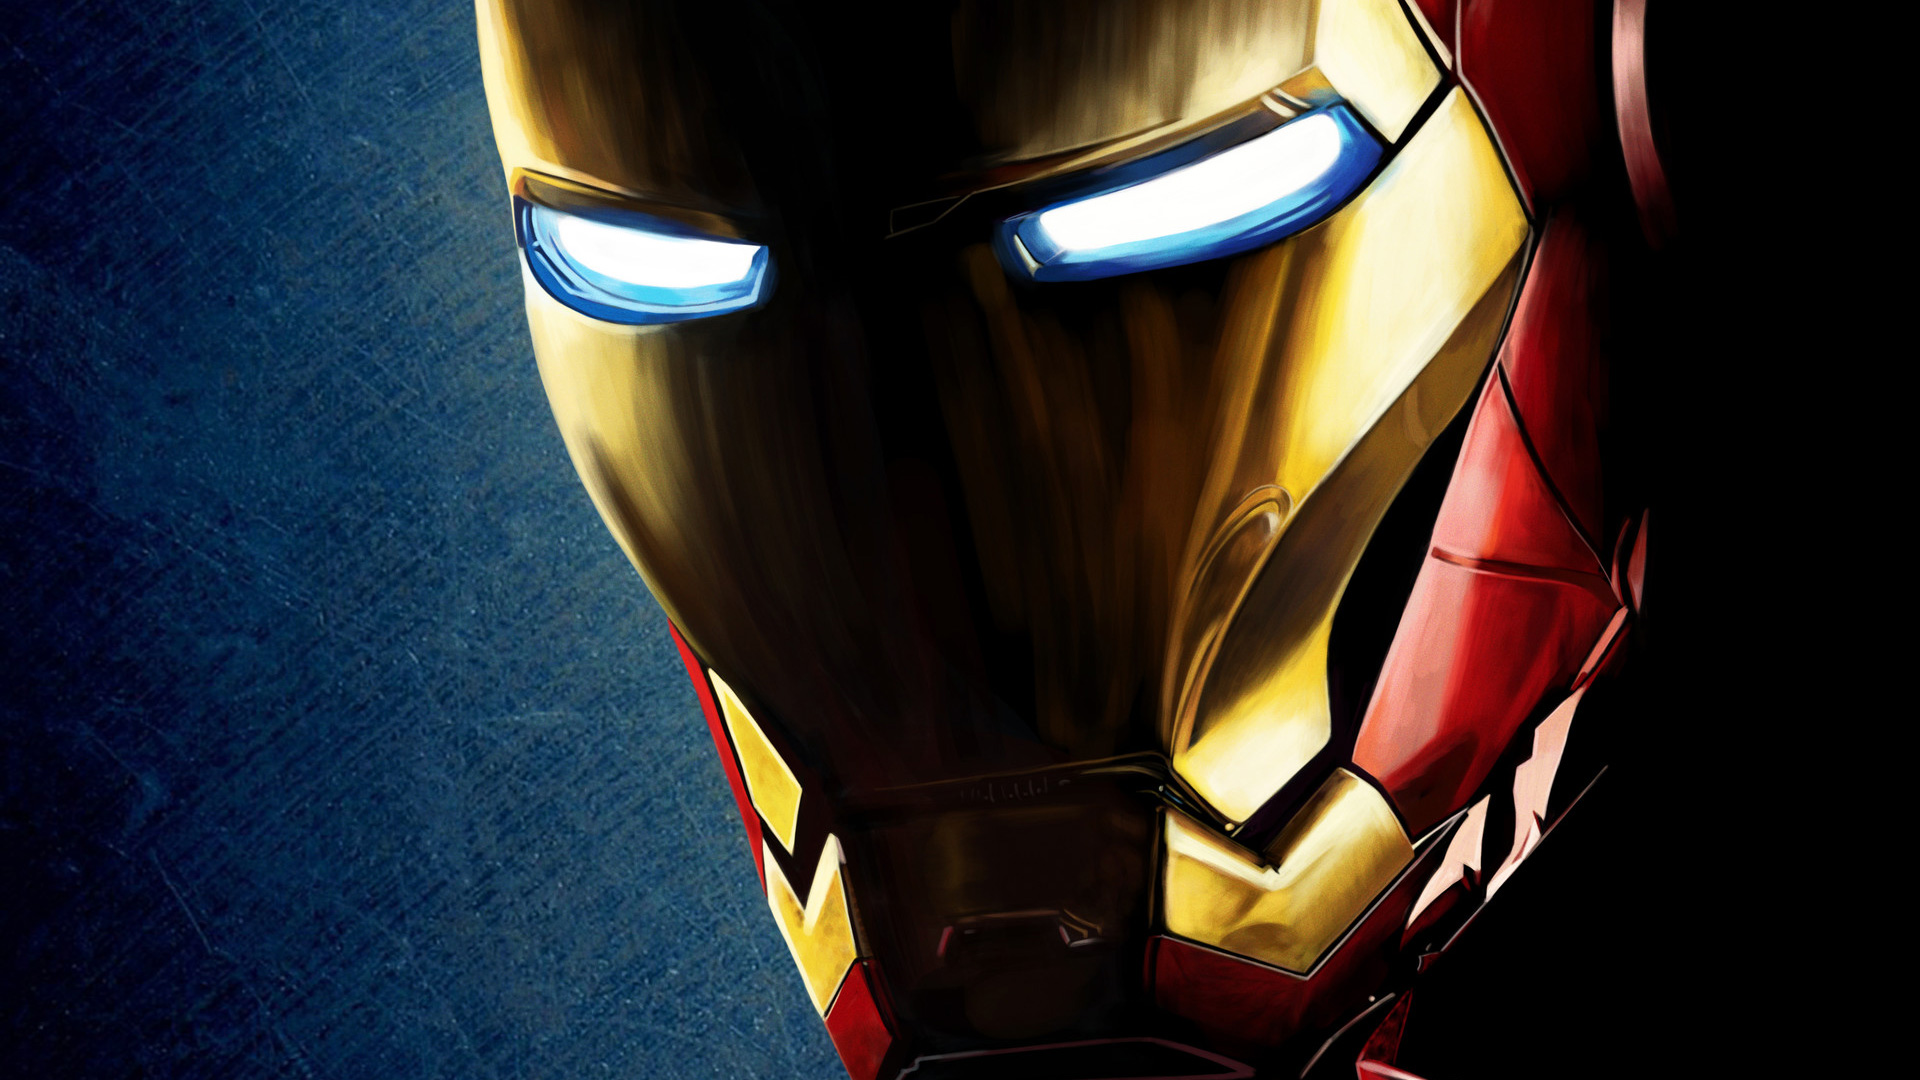 Descarga gratuita de fondo de pantalla para móvil de Iron Man, Películas.